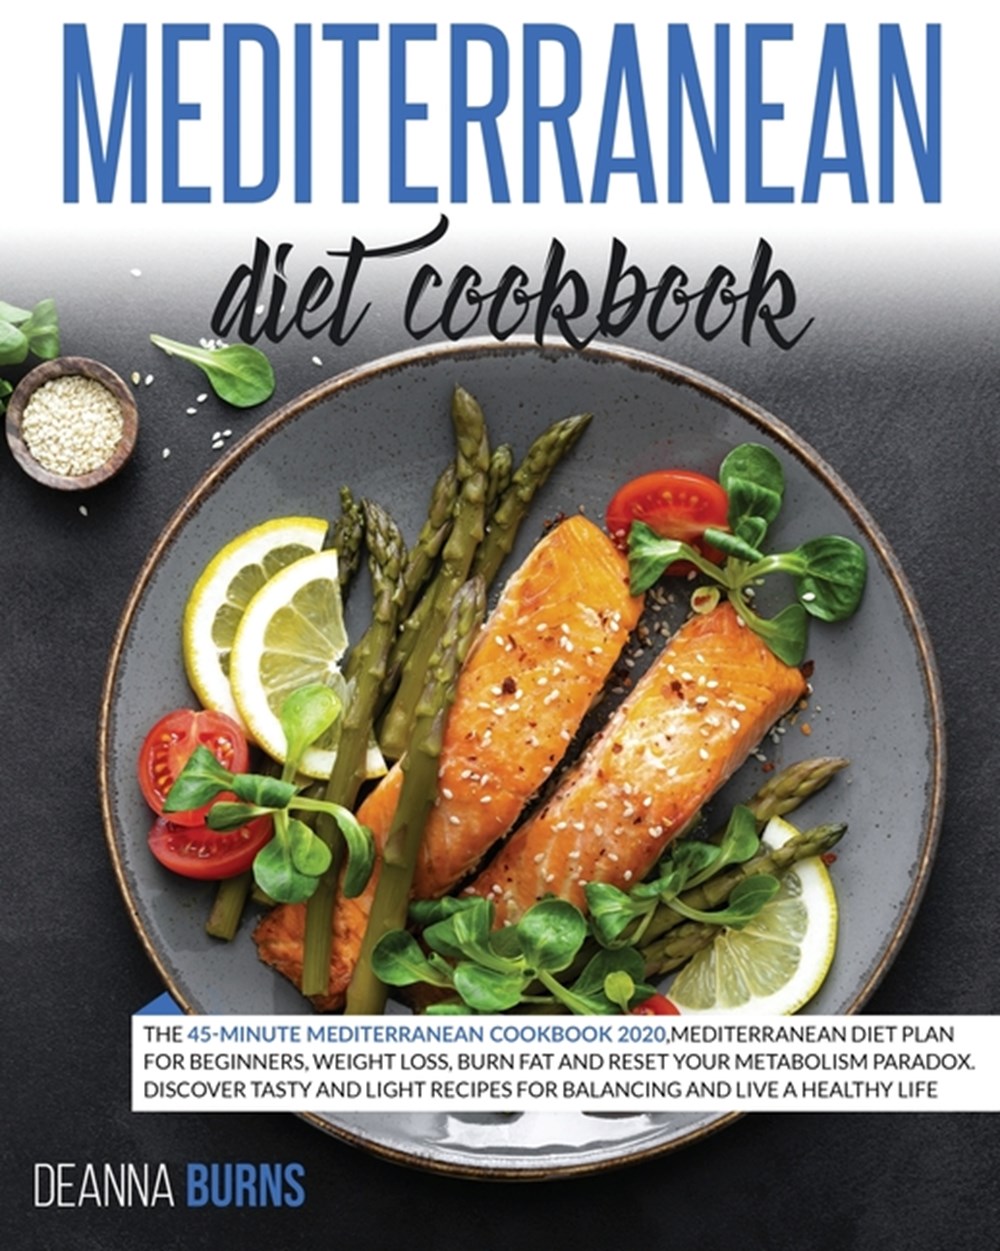 Mediterranean Diet Cookbook: The 45-Minute Mediterranean Cookbook 2020, Mediterranean Diet Plan for 